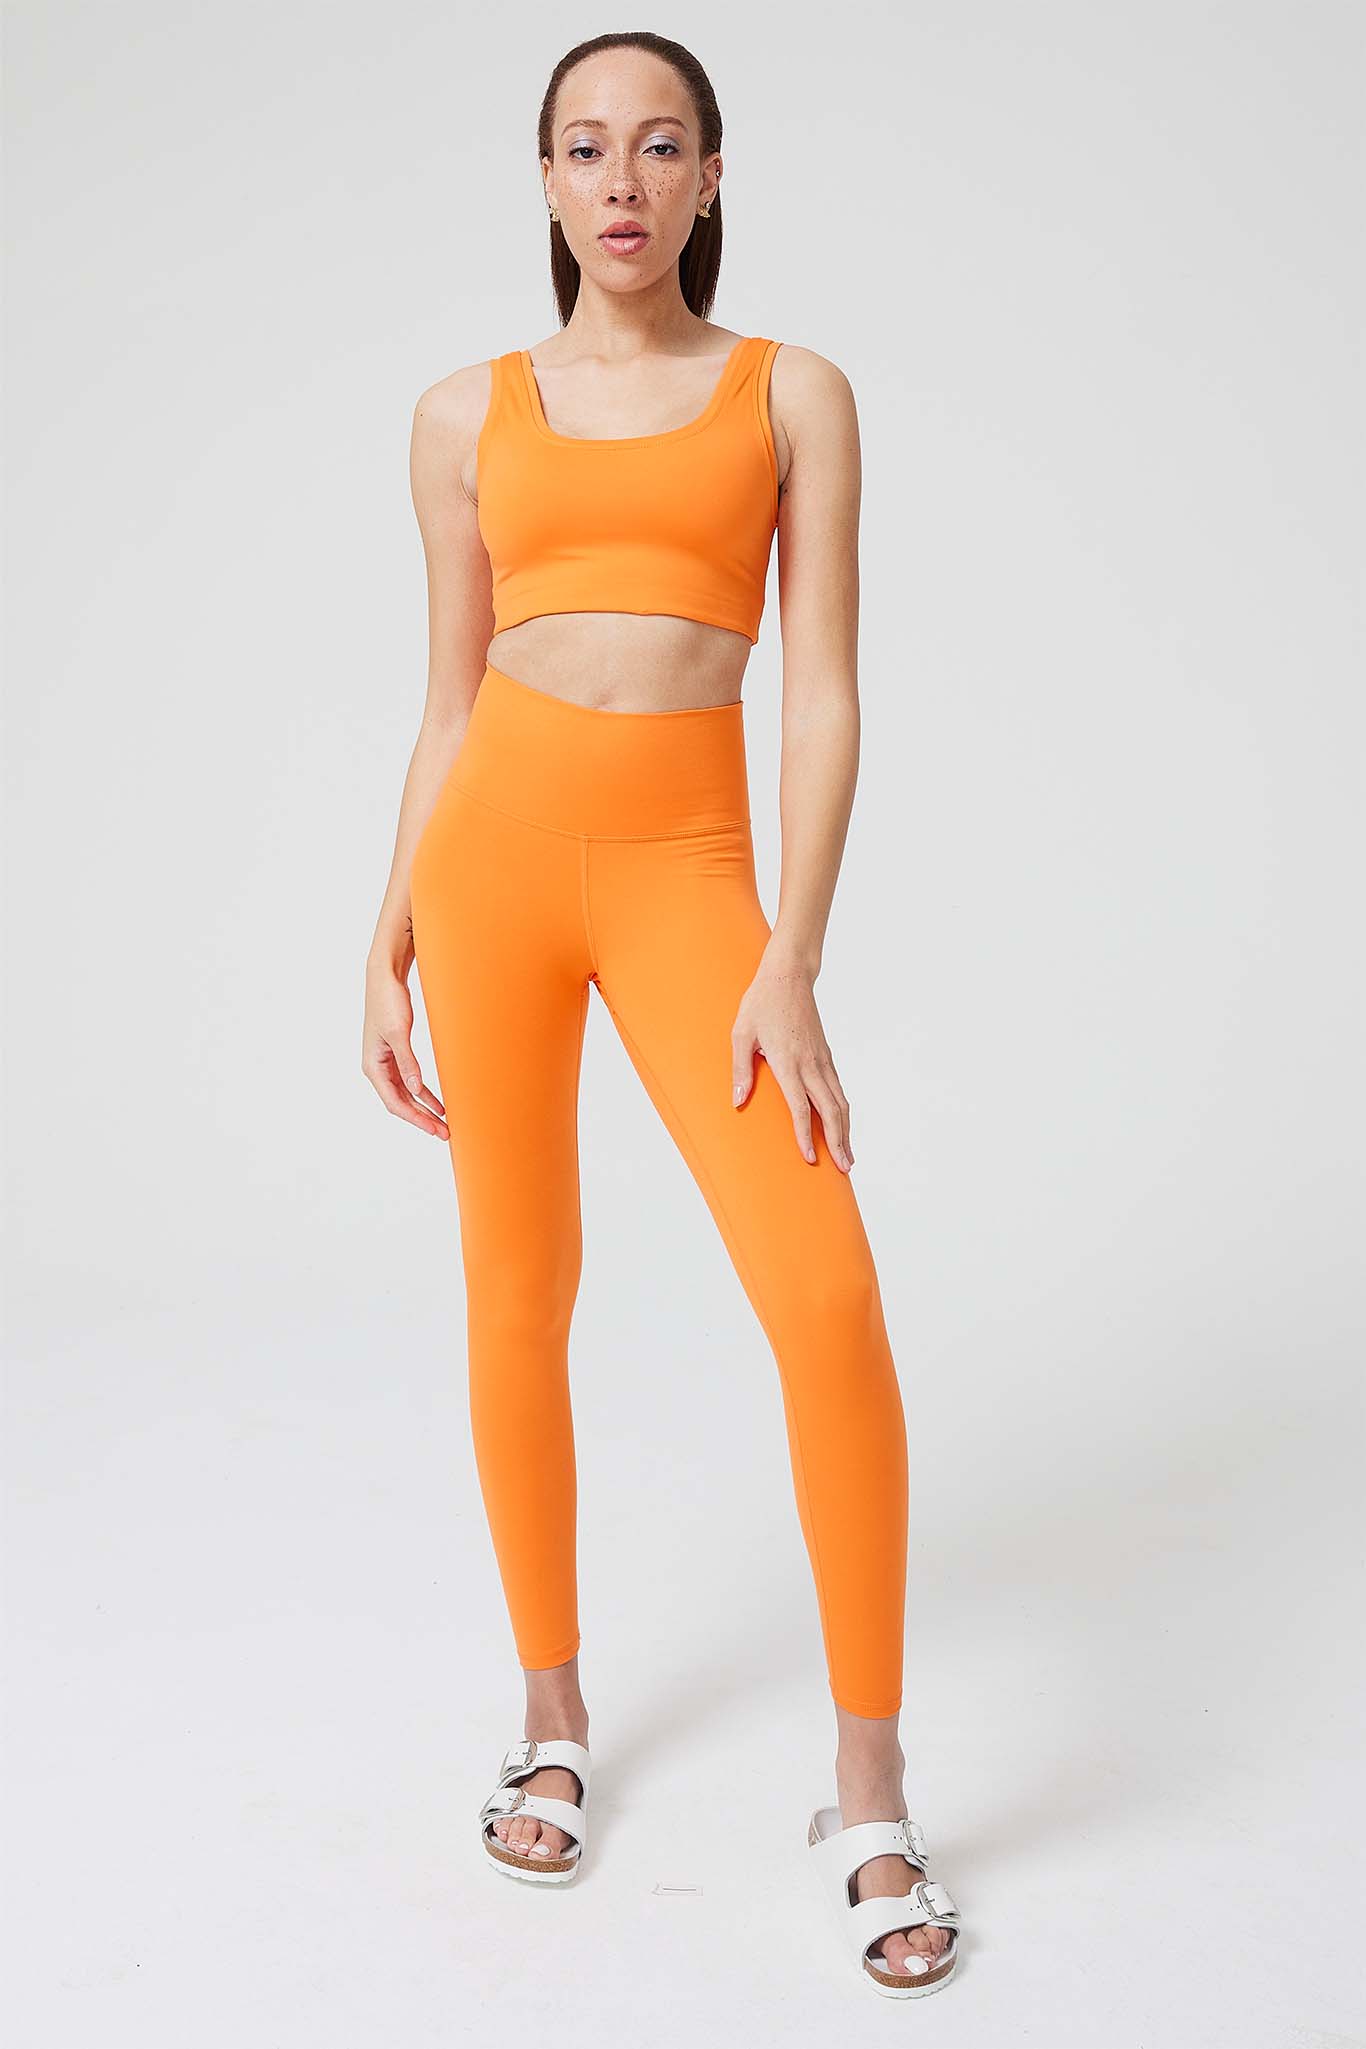 NEW Tangerine Women's Soft Color Block Serene Legging Size Medium